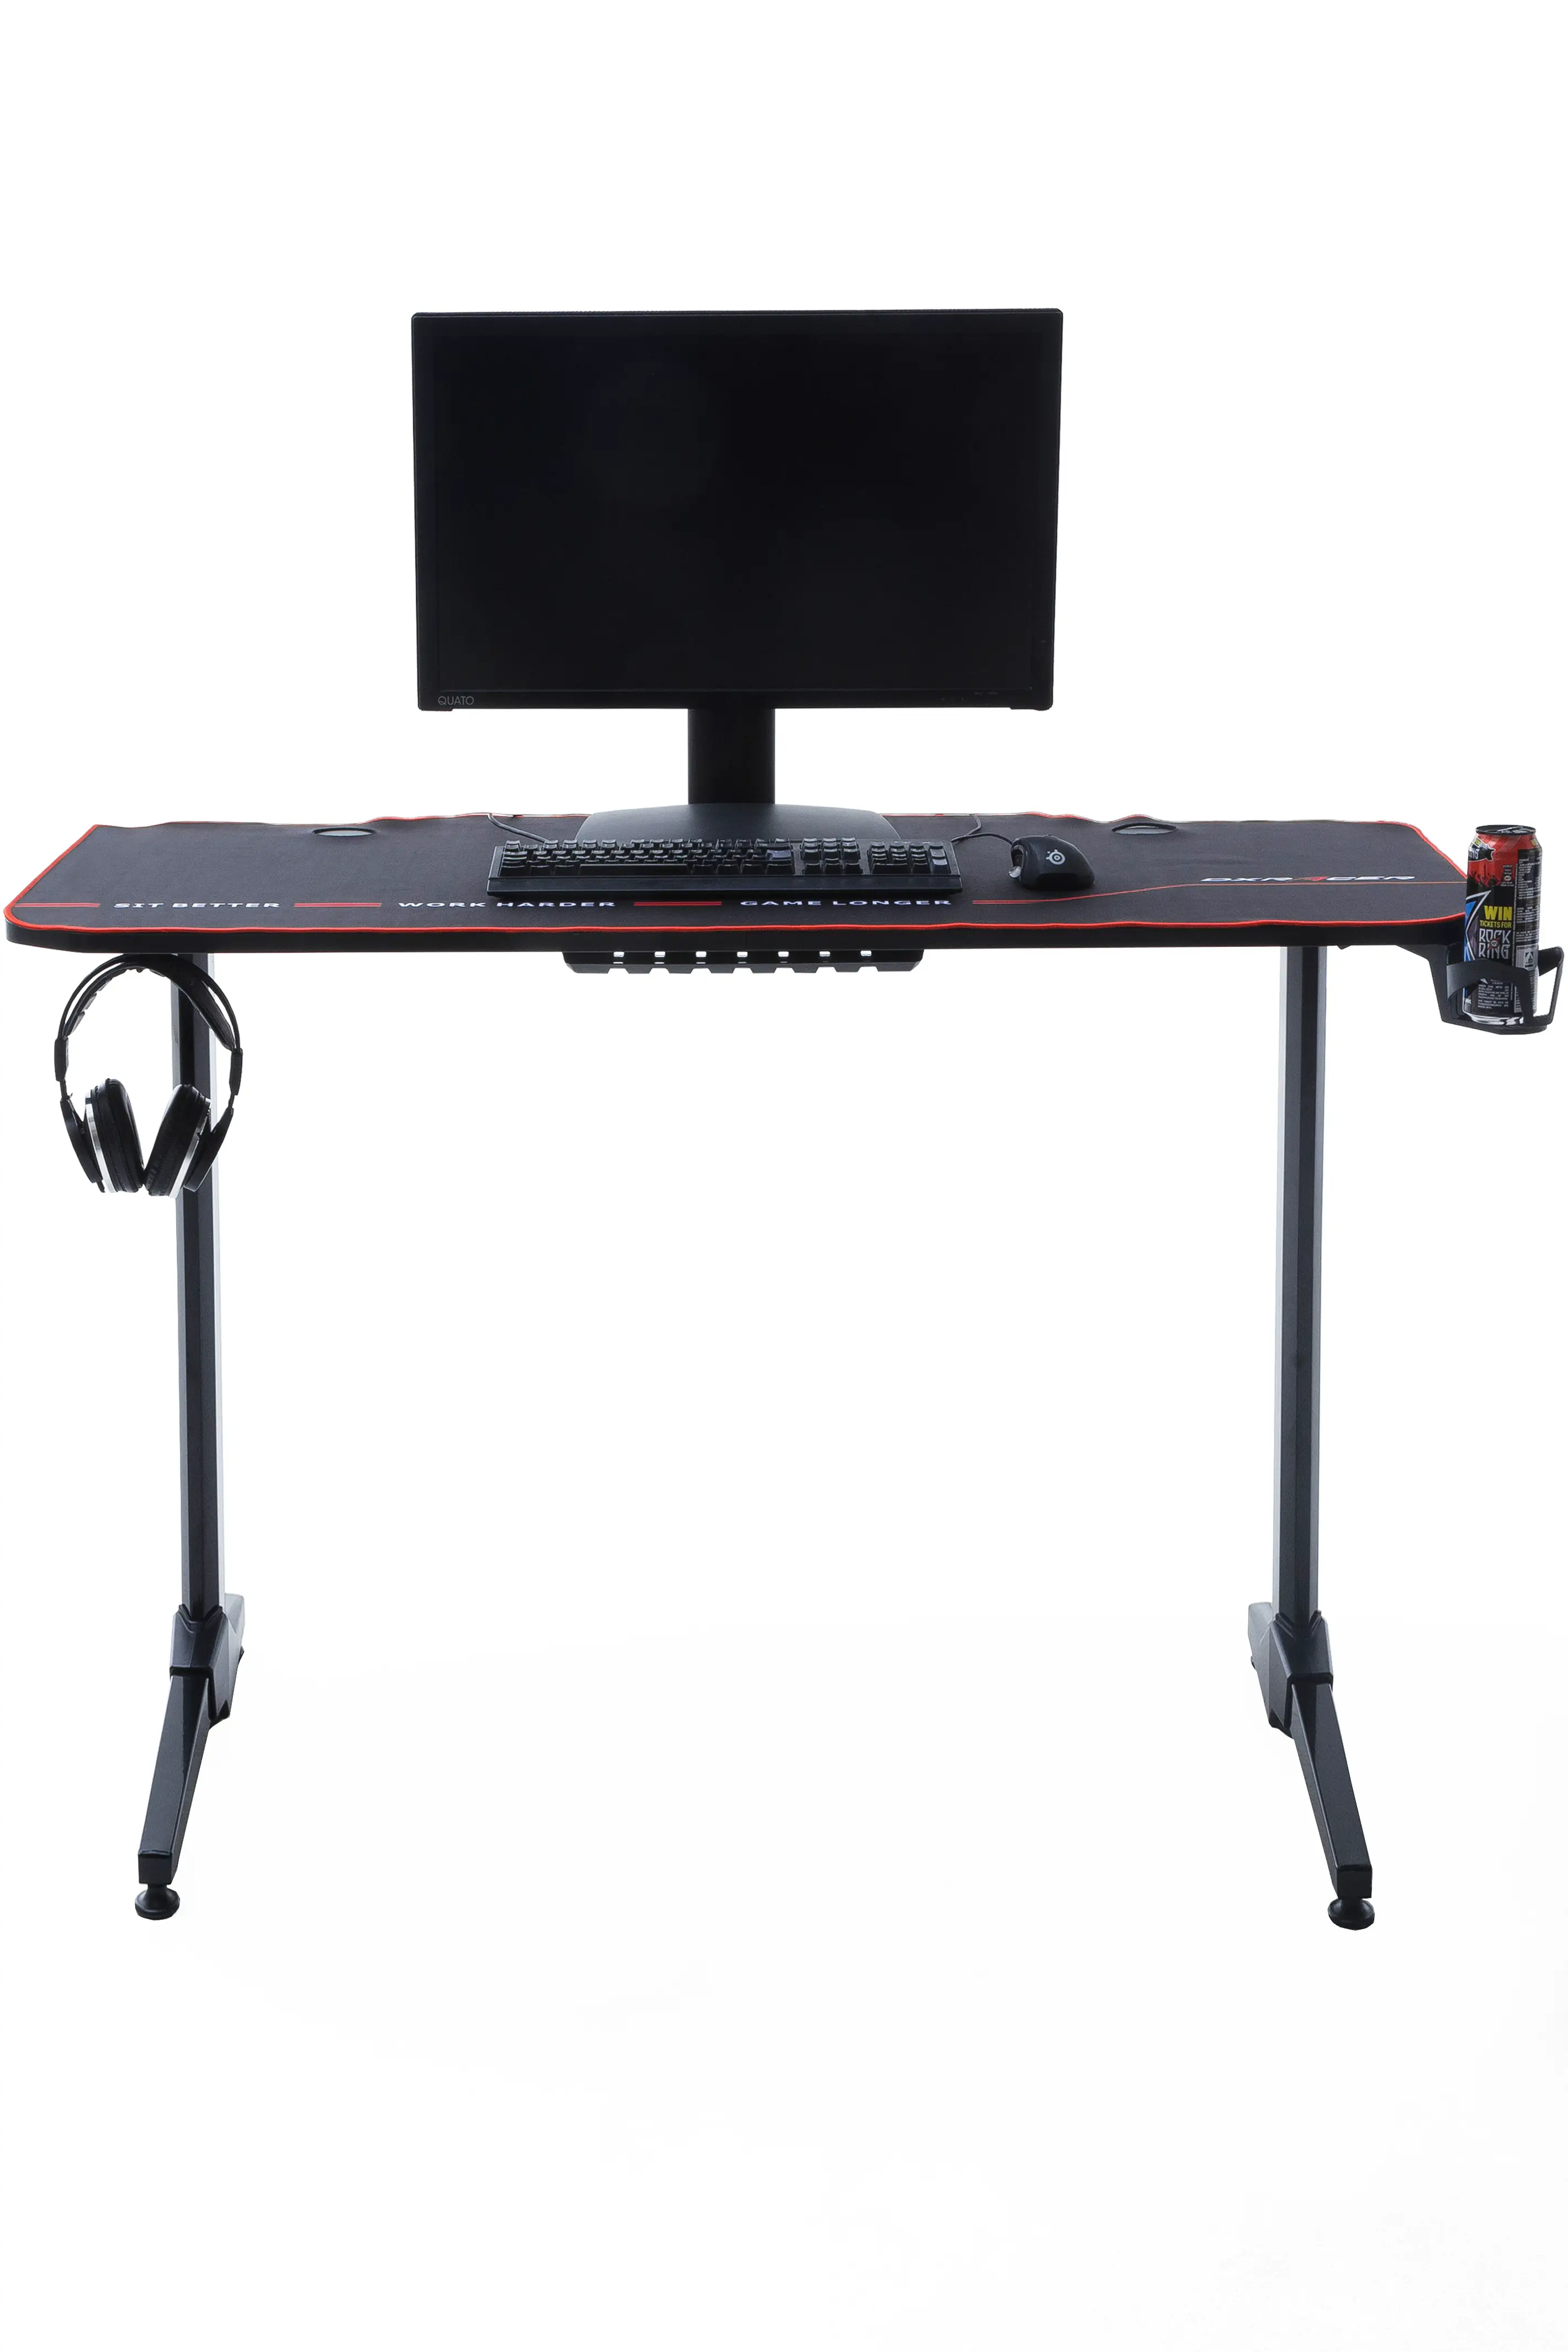 Max1 Desk Gaming